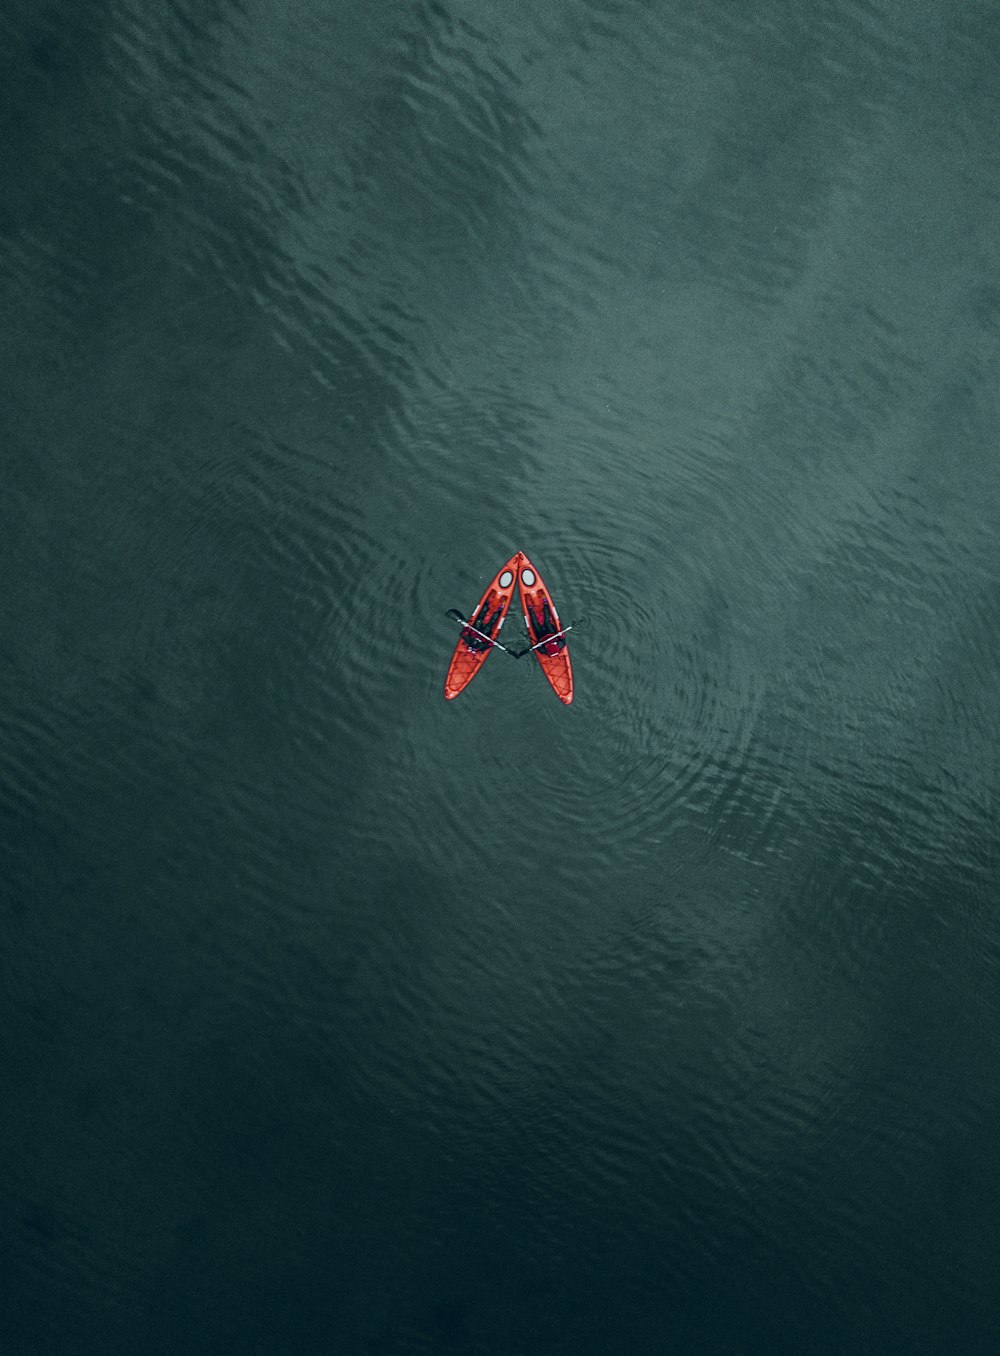 Un barco rojo y blanco sobre el agua